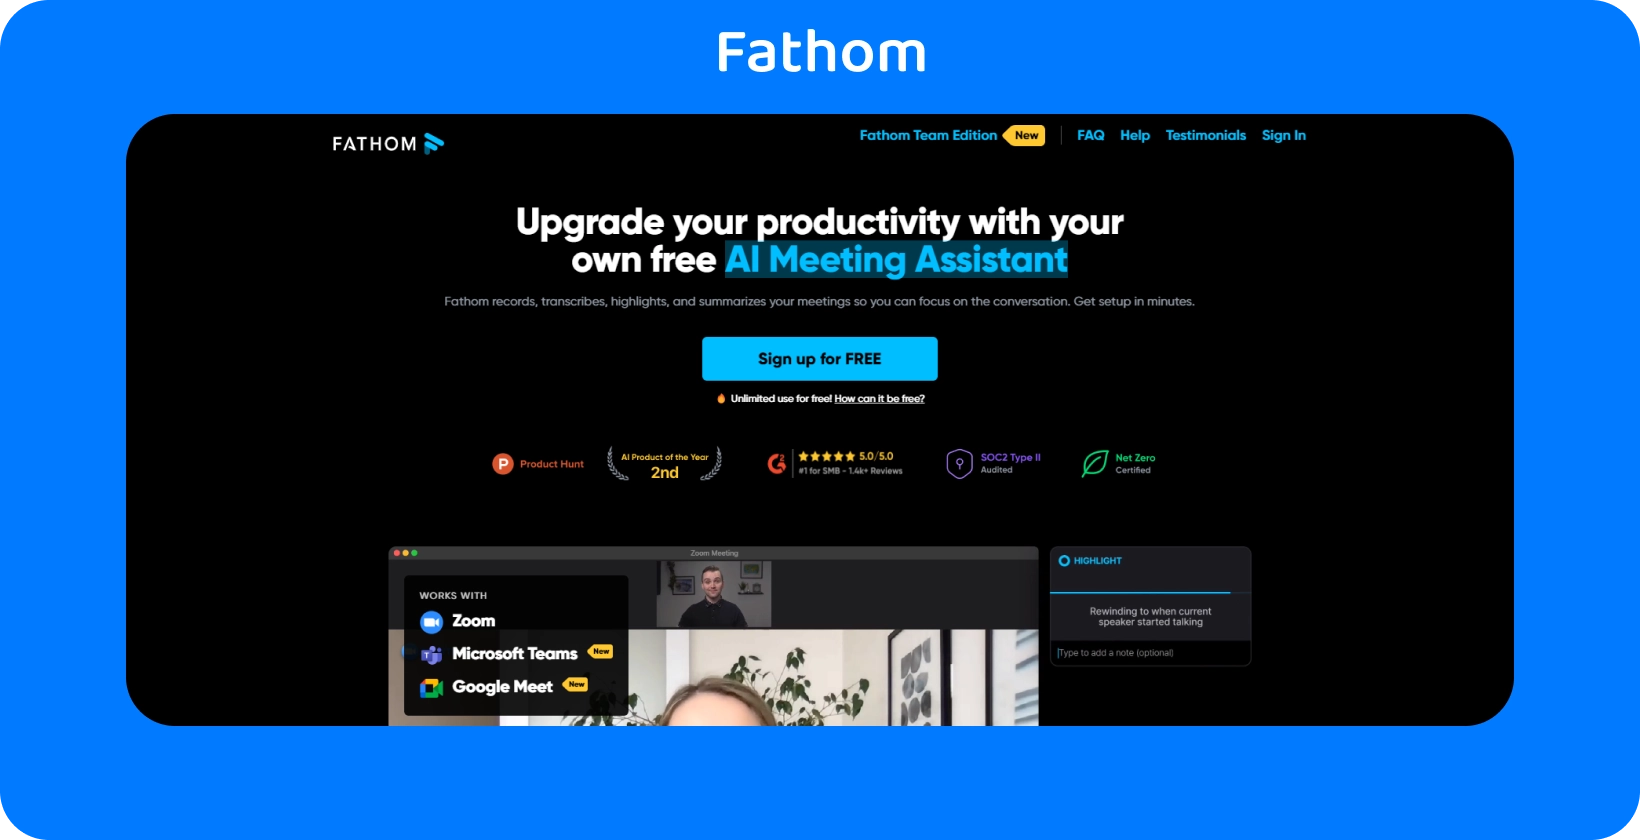 На веб-сторінці Fathom показано AI Meeting Assistant для підвищення продуктивності за допомогою служб запису та транскрибування.